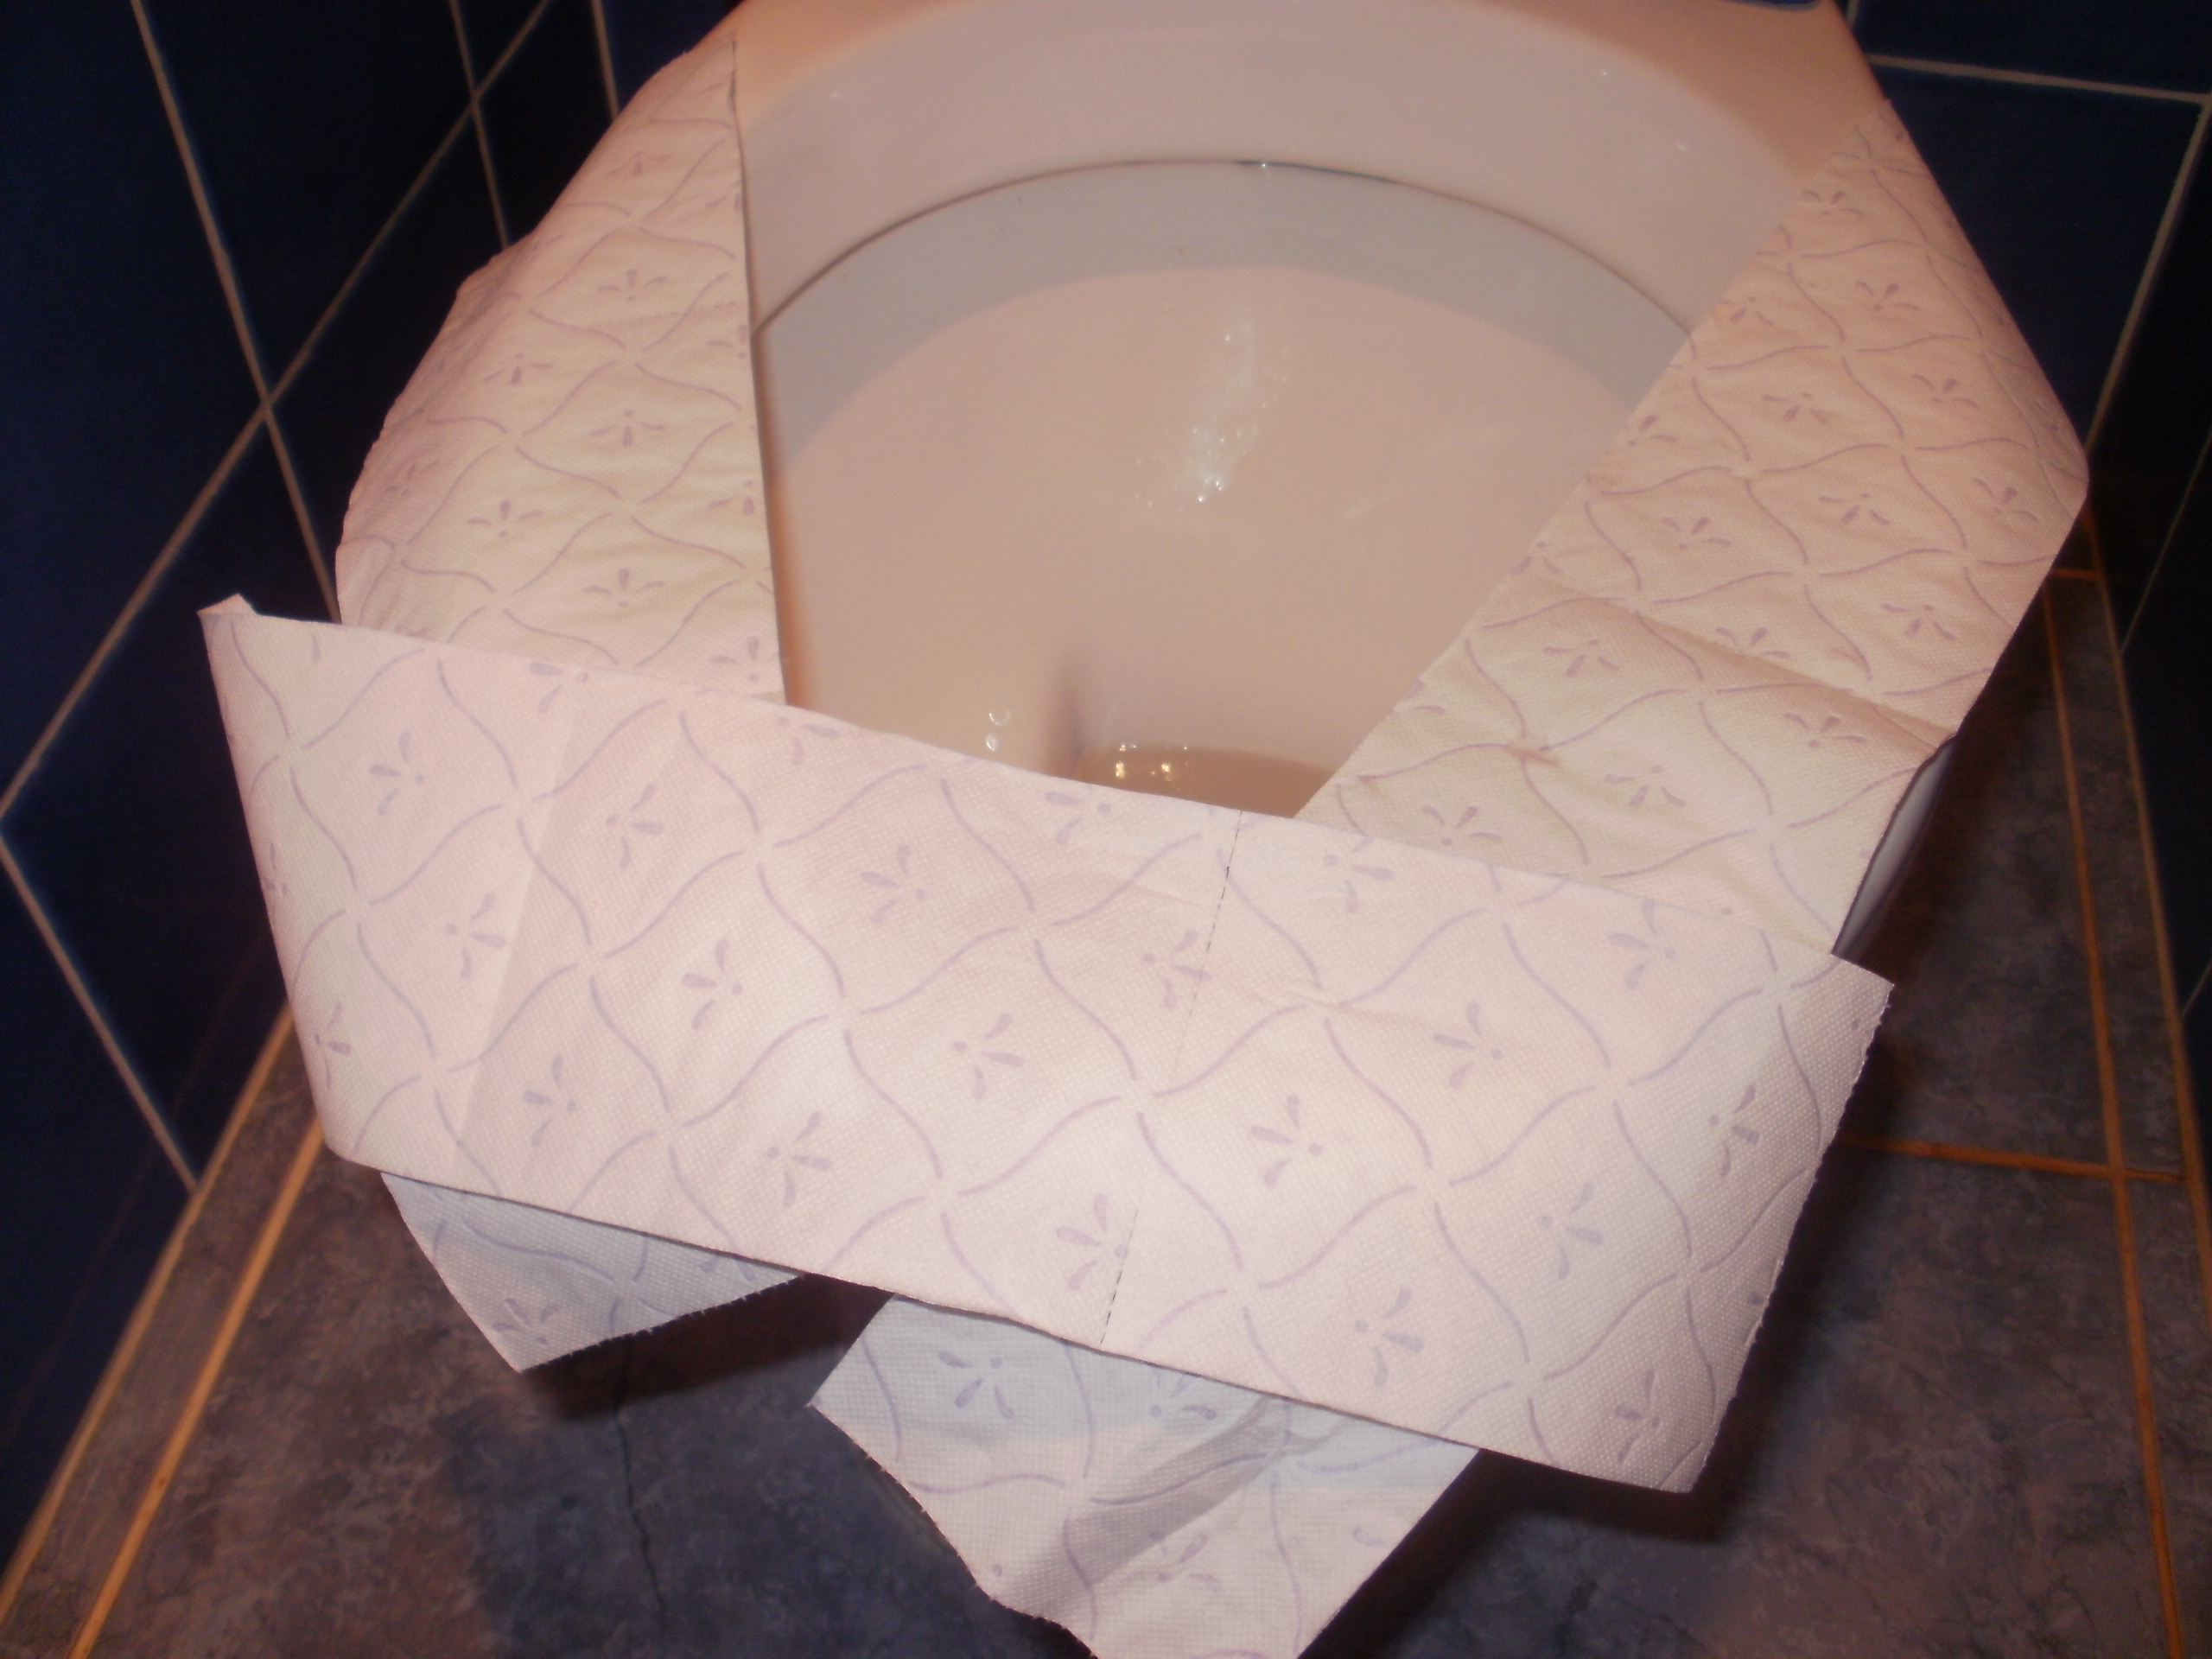 Hygiène : Ne posez jamais de papier sur la cuvette des toilettes